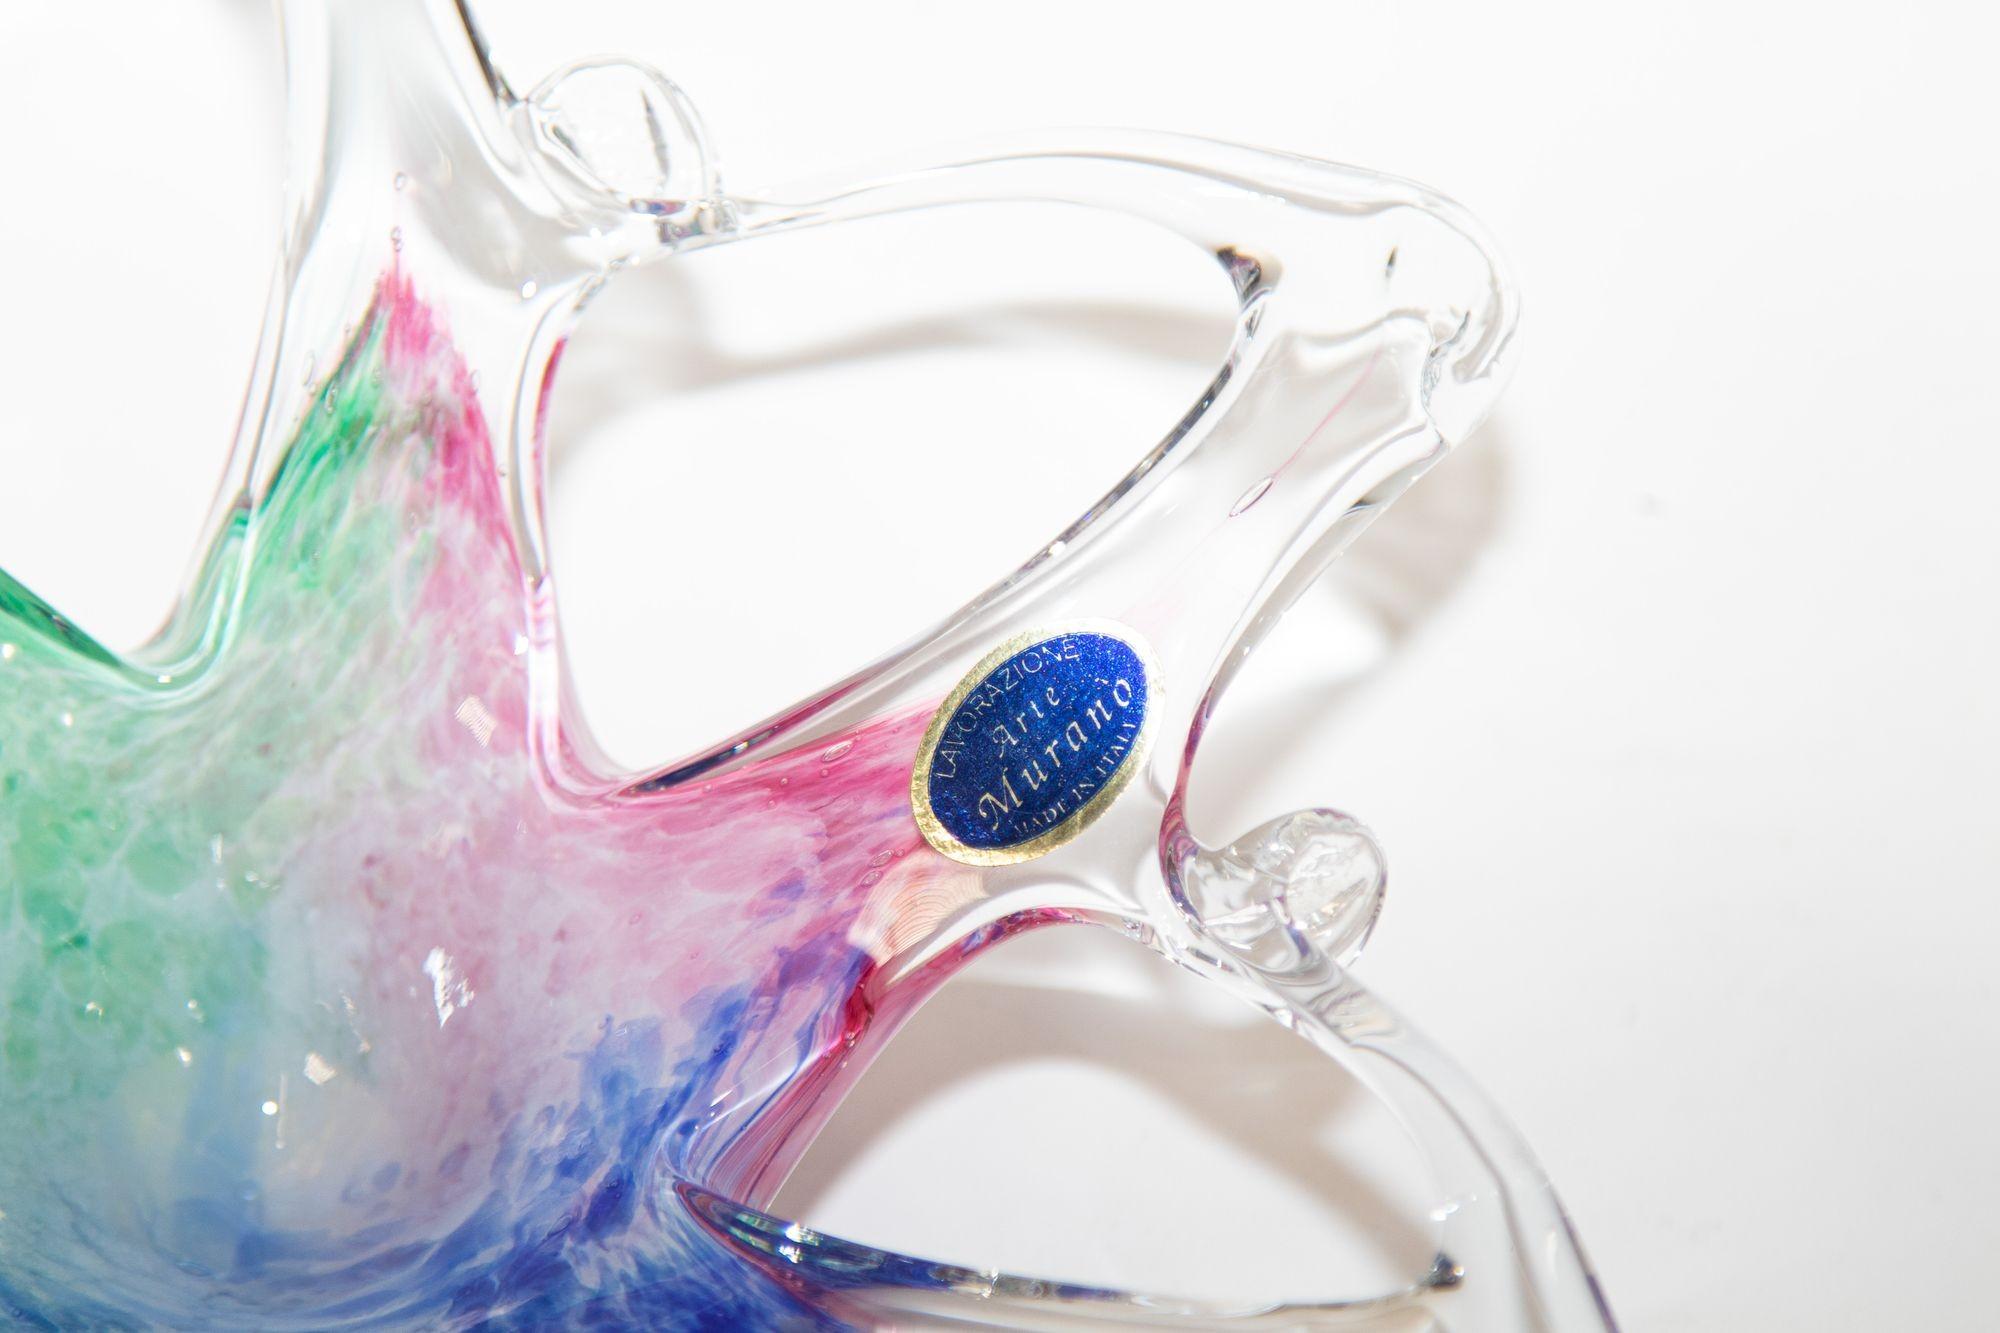 Vintage handgefertigte Murano Stern Blume Kunst Glasschale Italien.
Wunderschöne, blütenförmige oder 6-spitzige, mundgeblasene Glasschale in klar und rosa, blau, grün.
Vintage mundgeblasenes Murano Sternennebel-Kunstglas mit durchbrochenen und